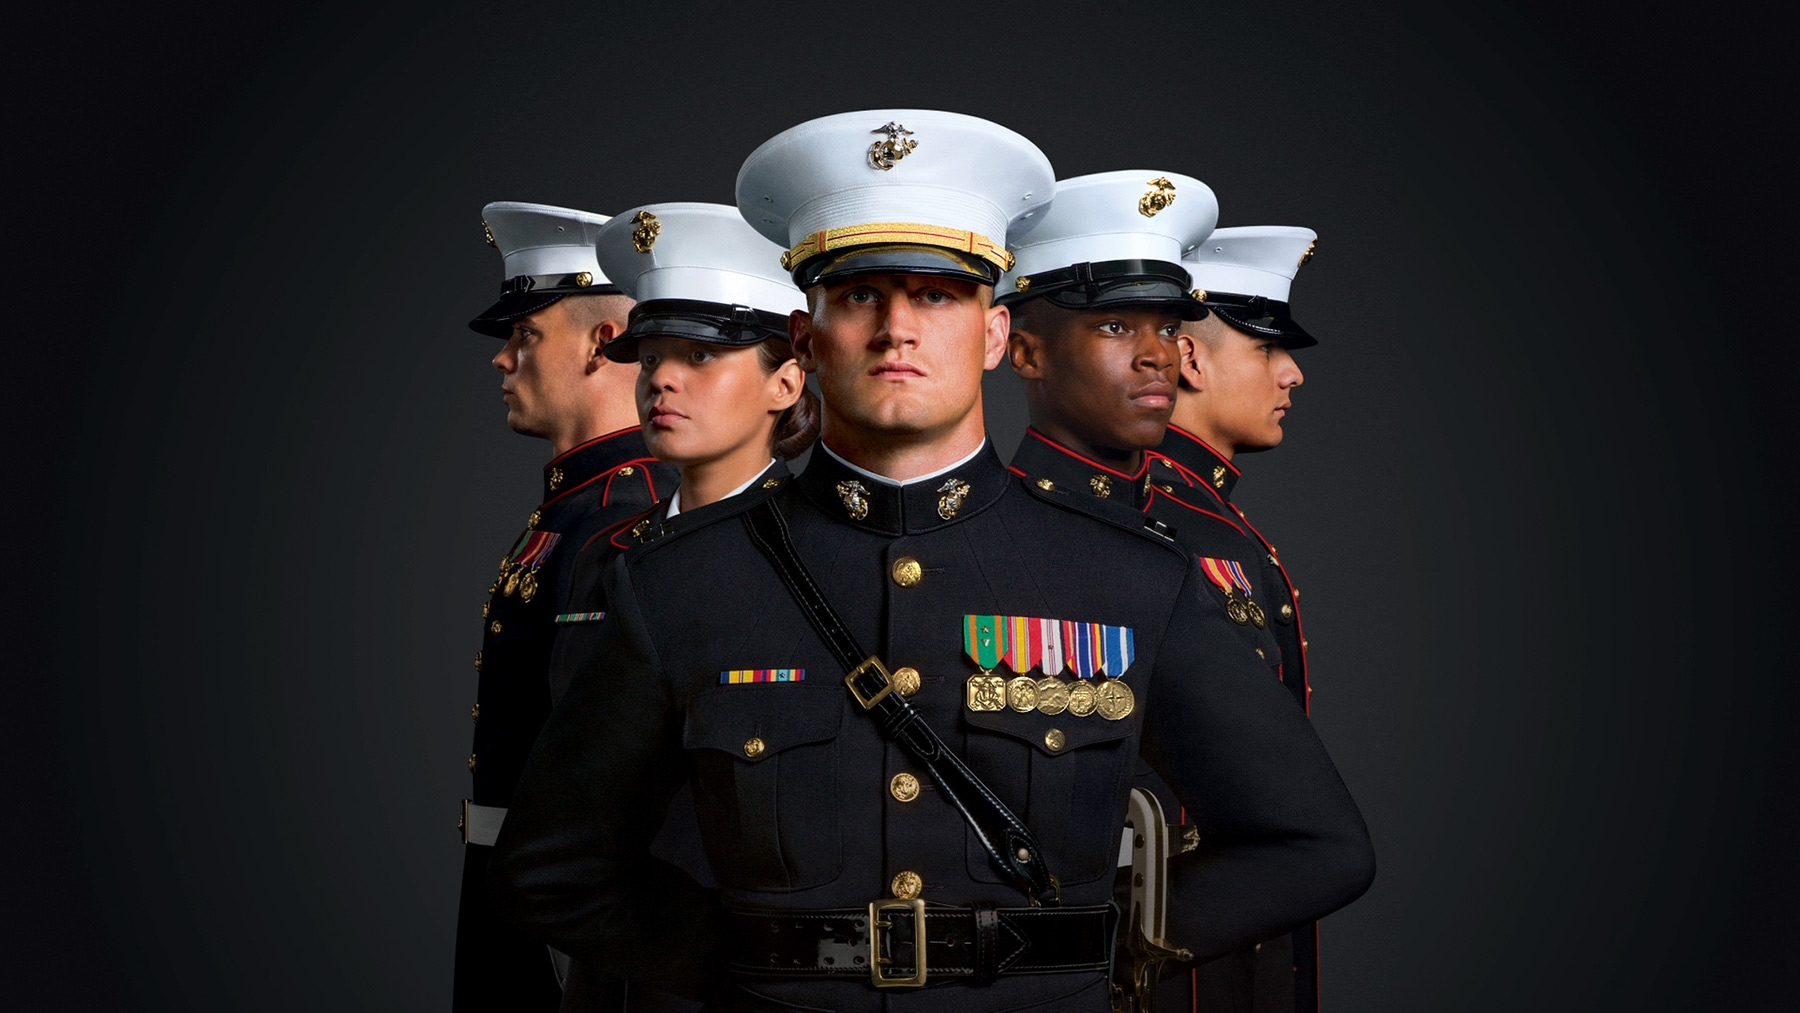 united-states-marine-corps-marine-recruiting-marines